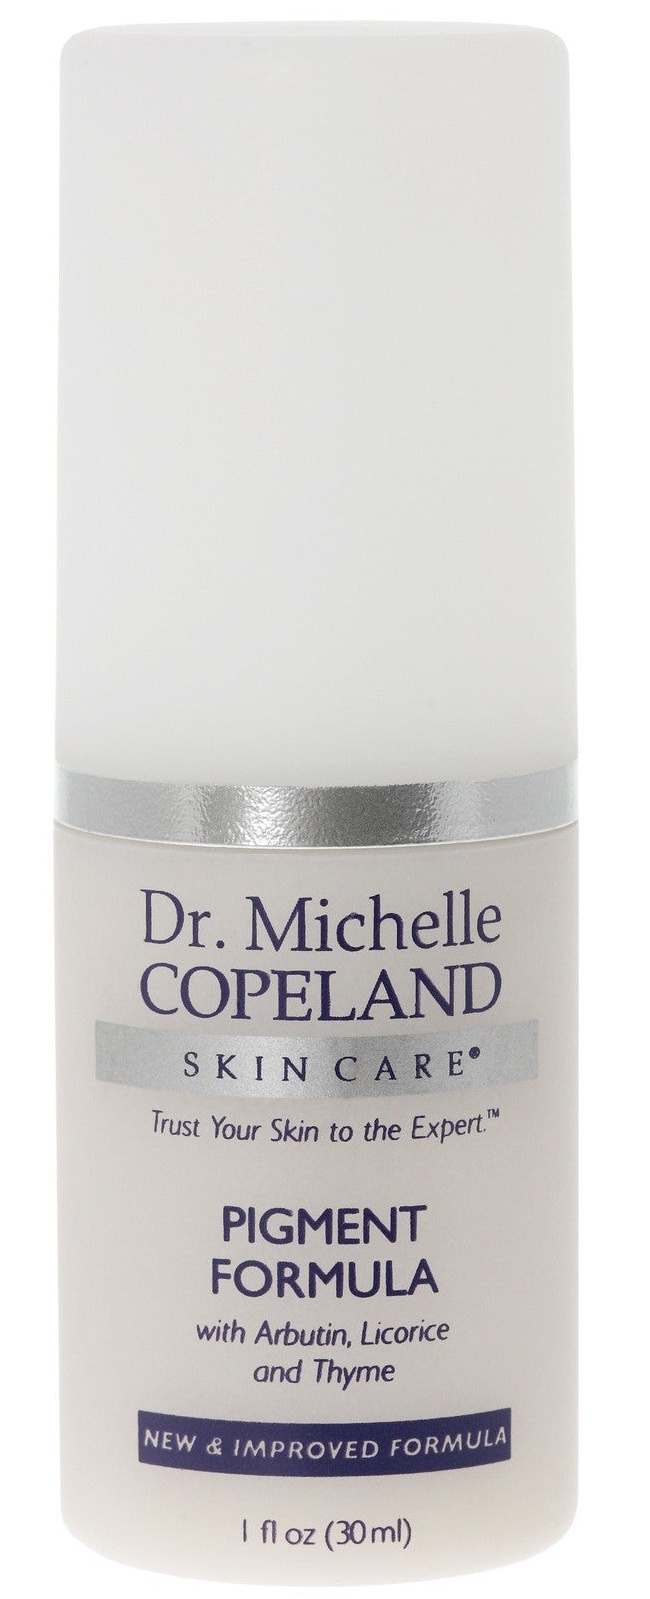 Dr. Michelle Copeland Pigment Formula